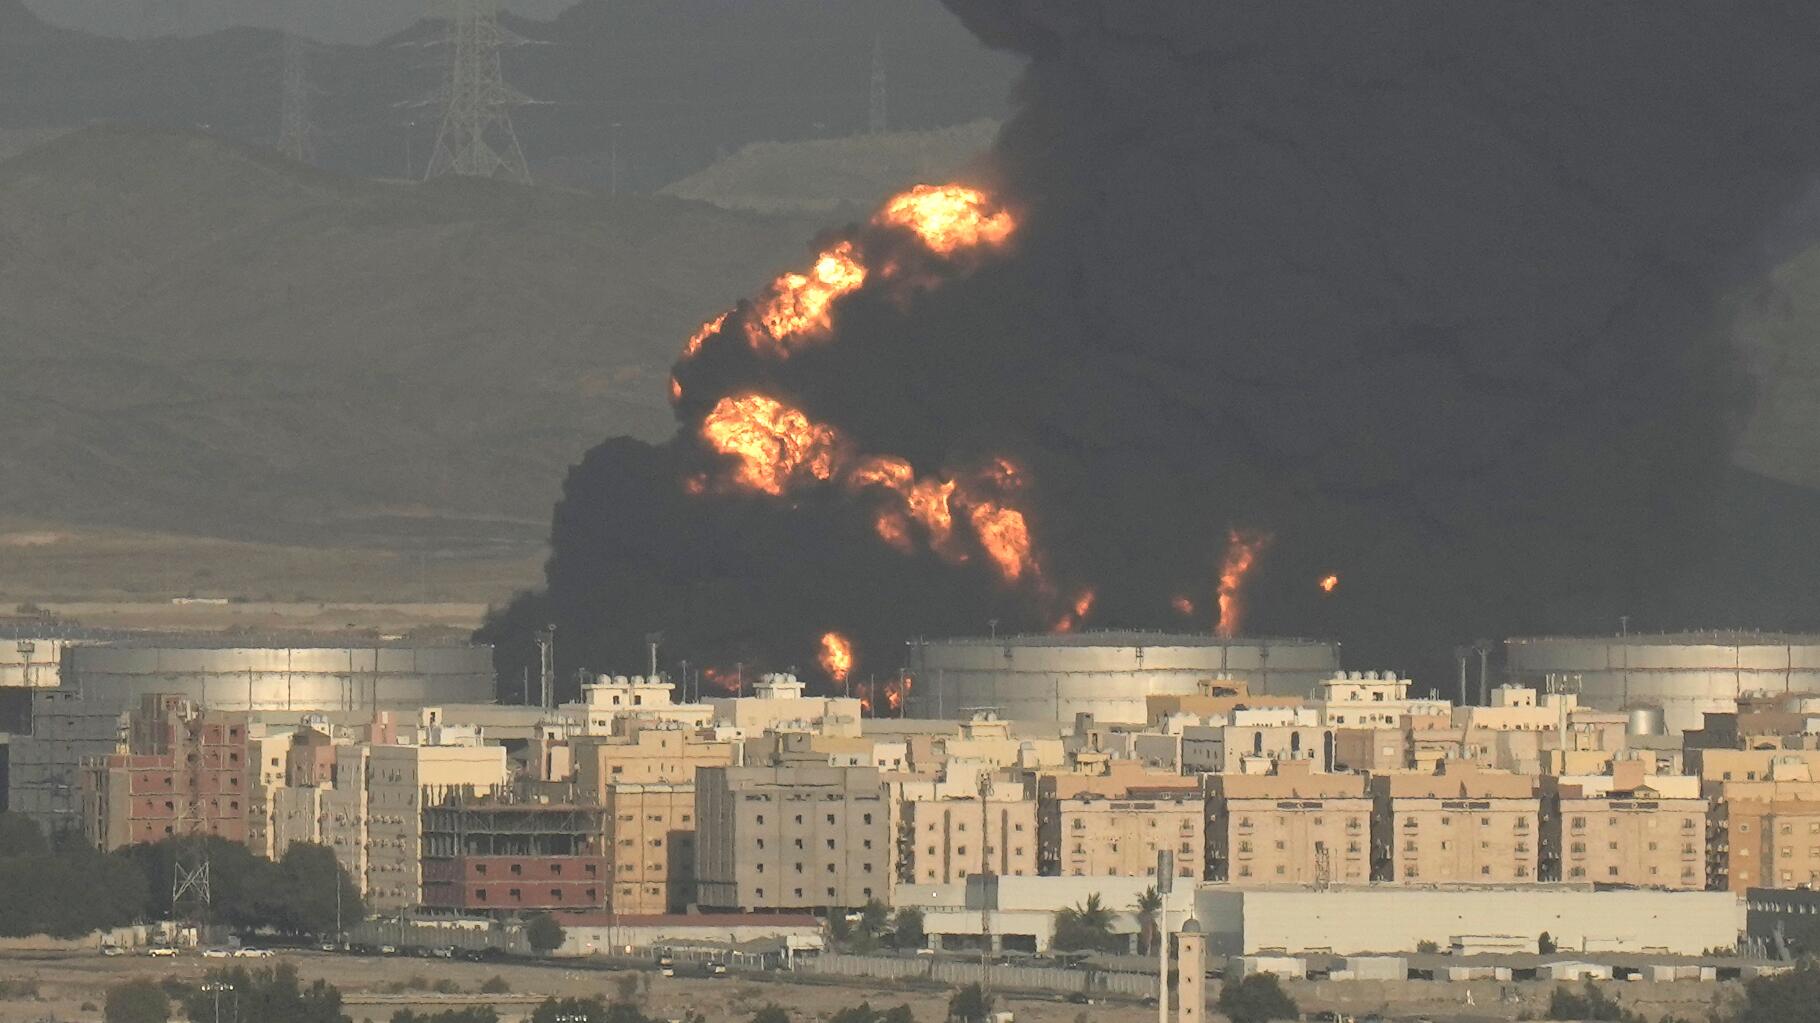 Arabie saoudite: Énorme incendie dans un site pétrolier proche du circuit de F1